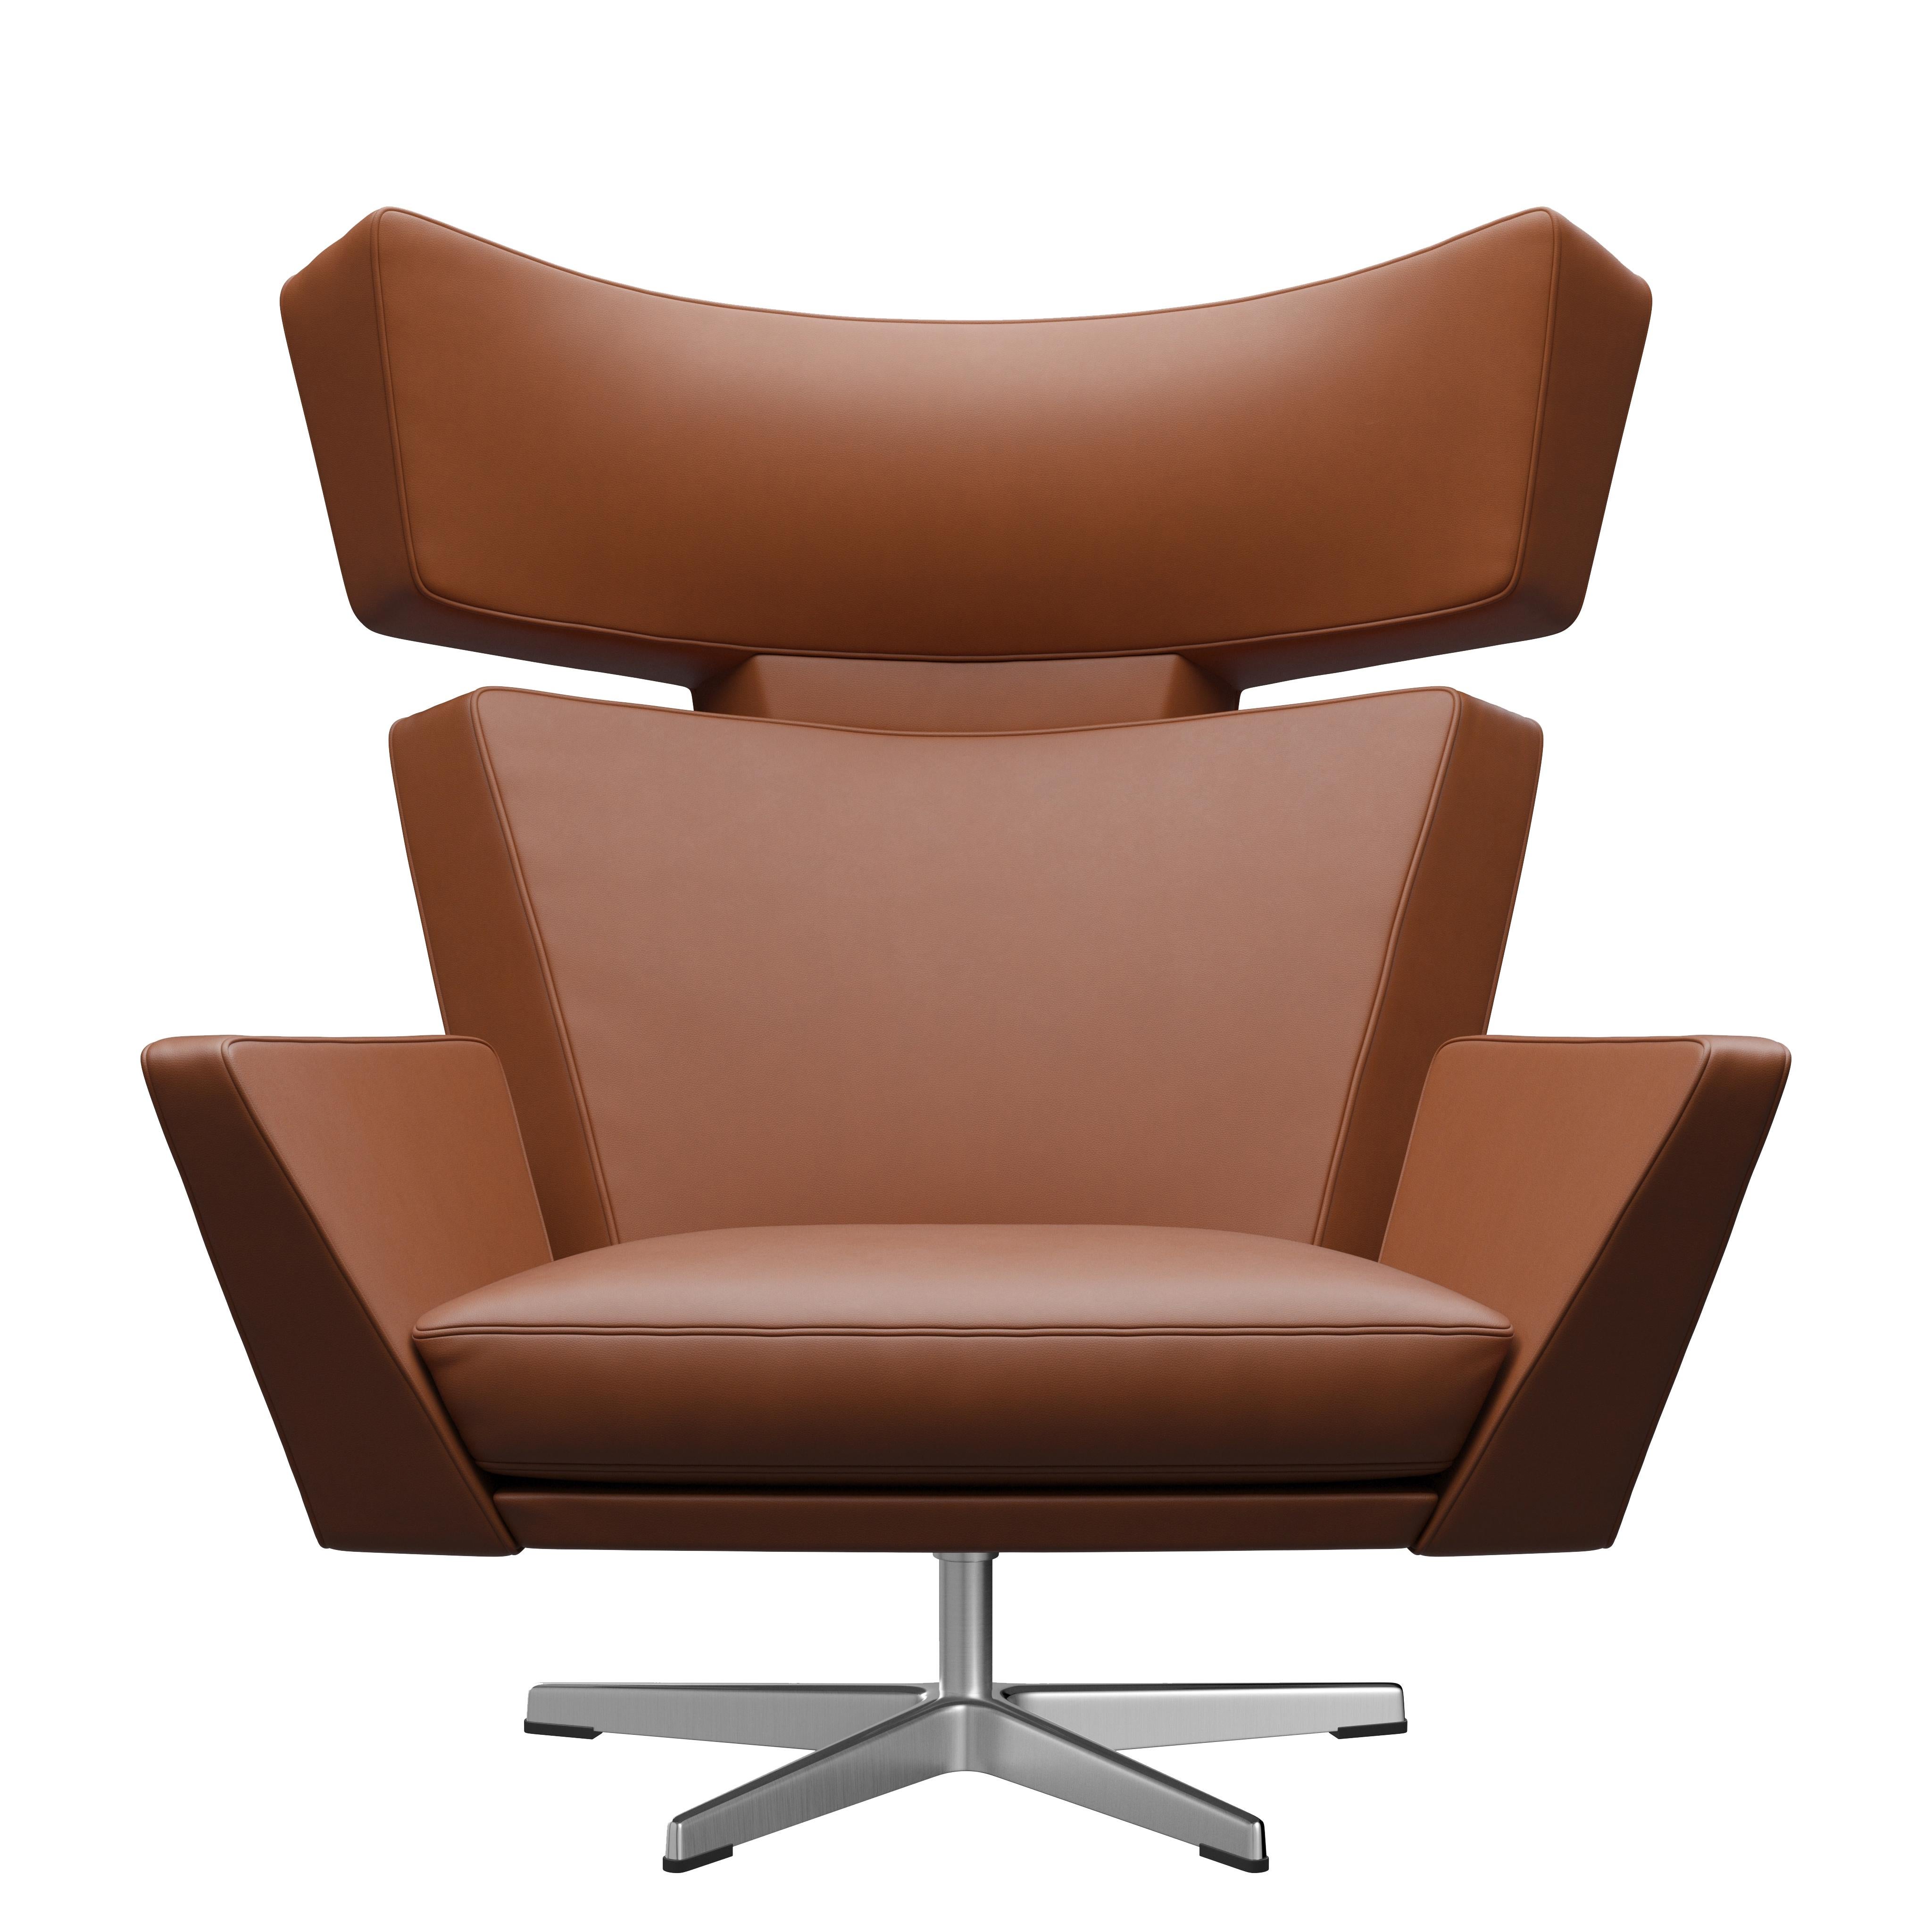 Arne Jacobsen 'Oksen' Chair for Fritz Hansen in Essential Leather Upholstery For Sale 6